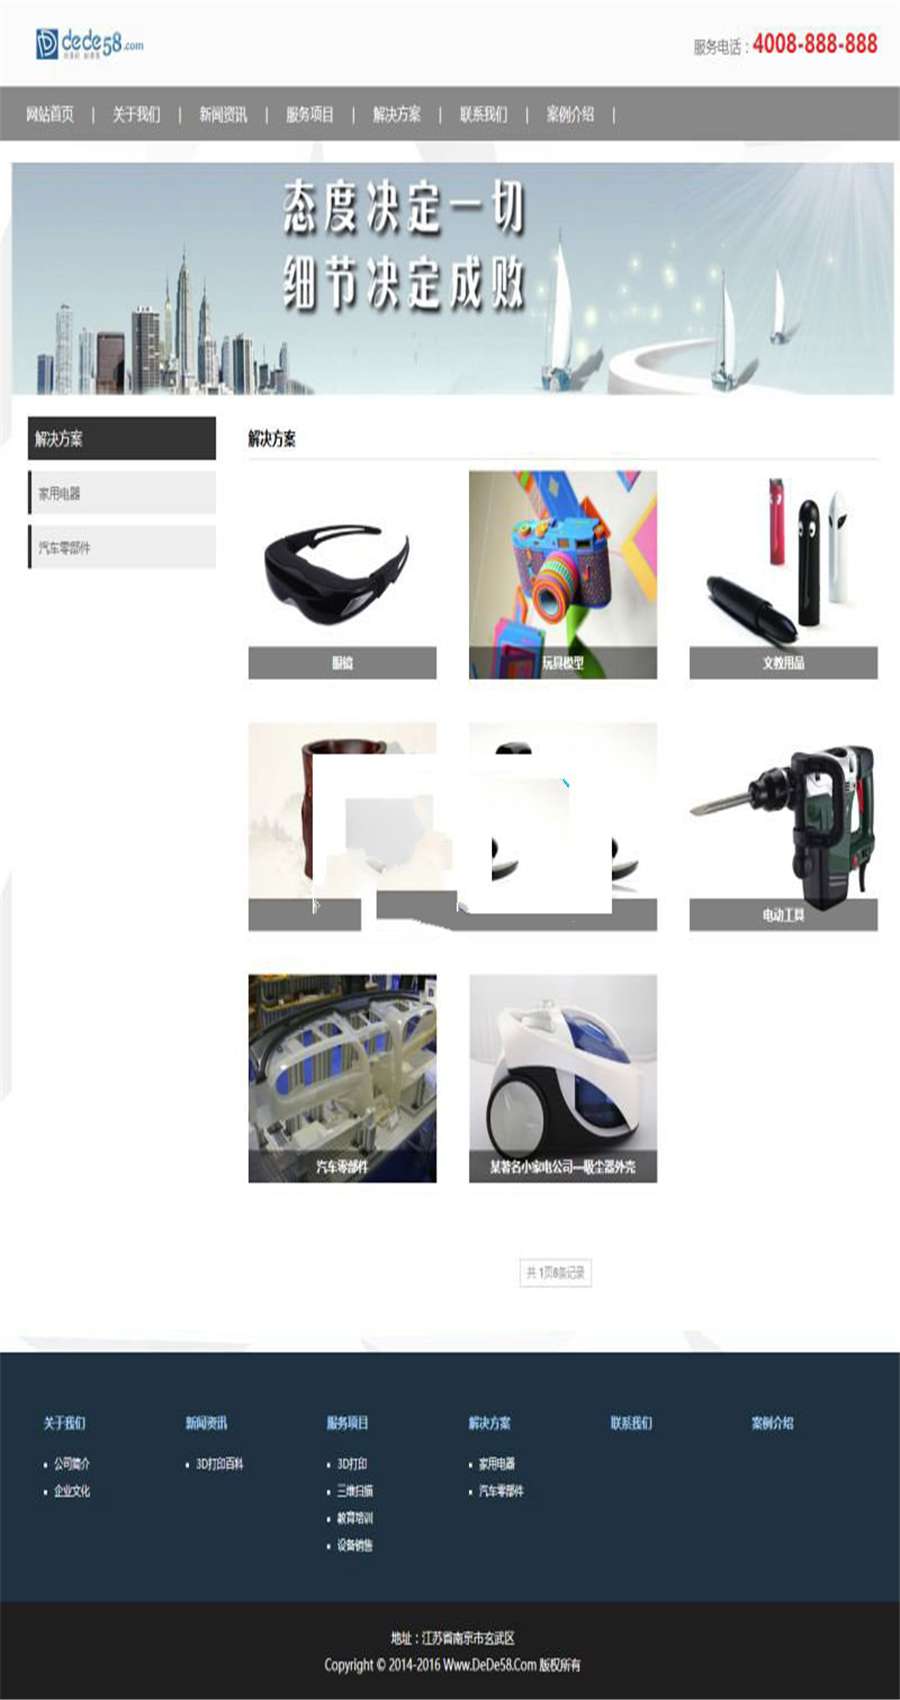 [整站源码]织梦dedecms响应式3D打印设备公司网站模板(自适应手机移动端)插图(1)